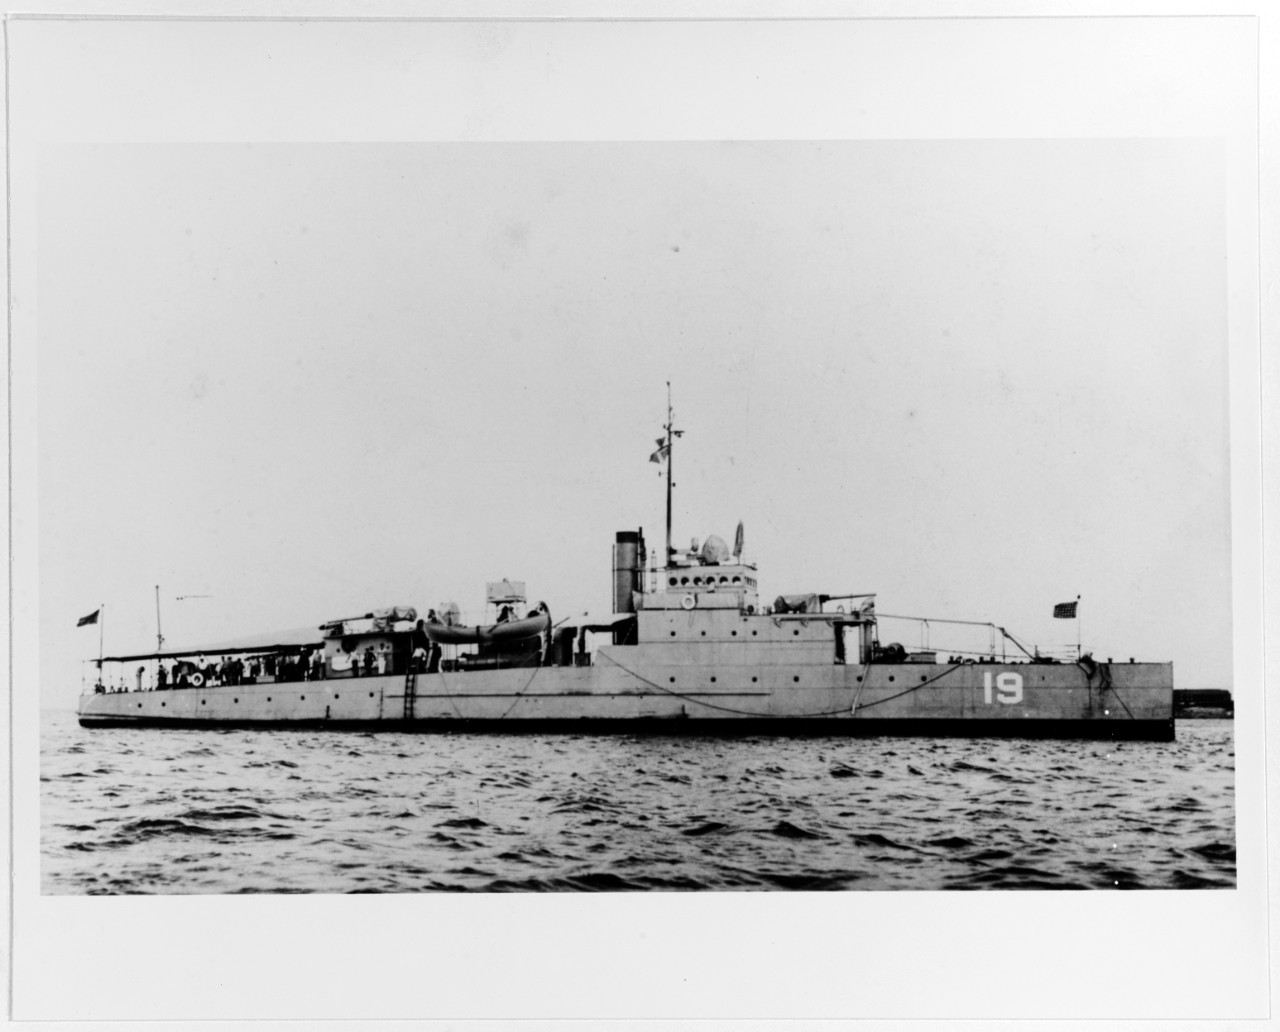 USS EAGLE 19 (PE-19)